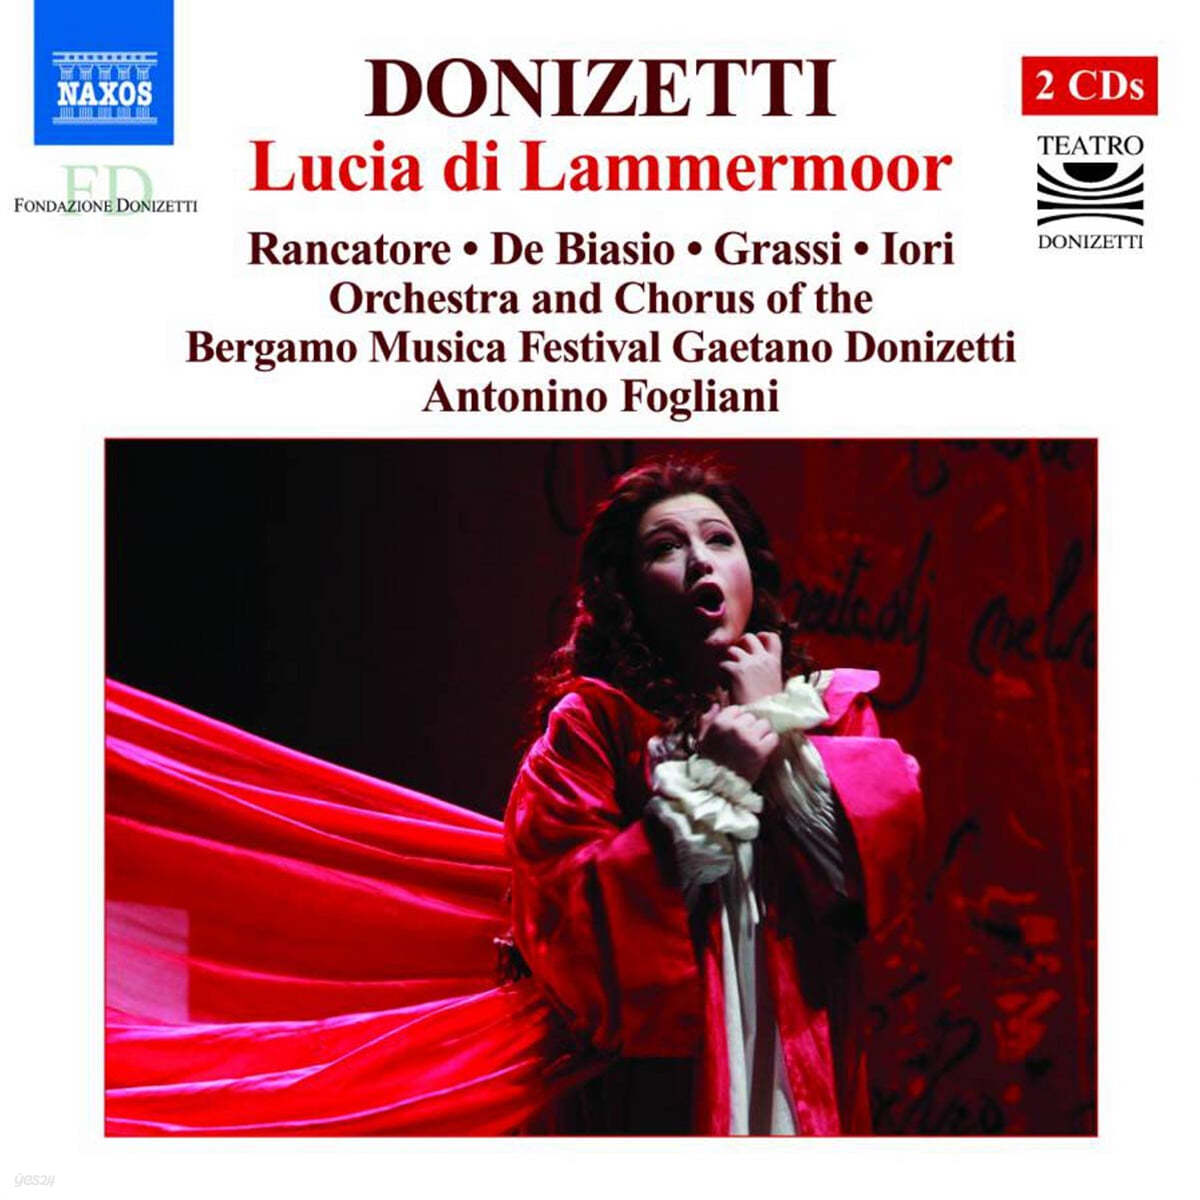 Antonino Fogliani 도니제티: 오페라 &#39;람메르무어의 루치아&#39; (Donizetti: Lucia di Lammermoor) 